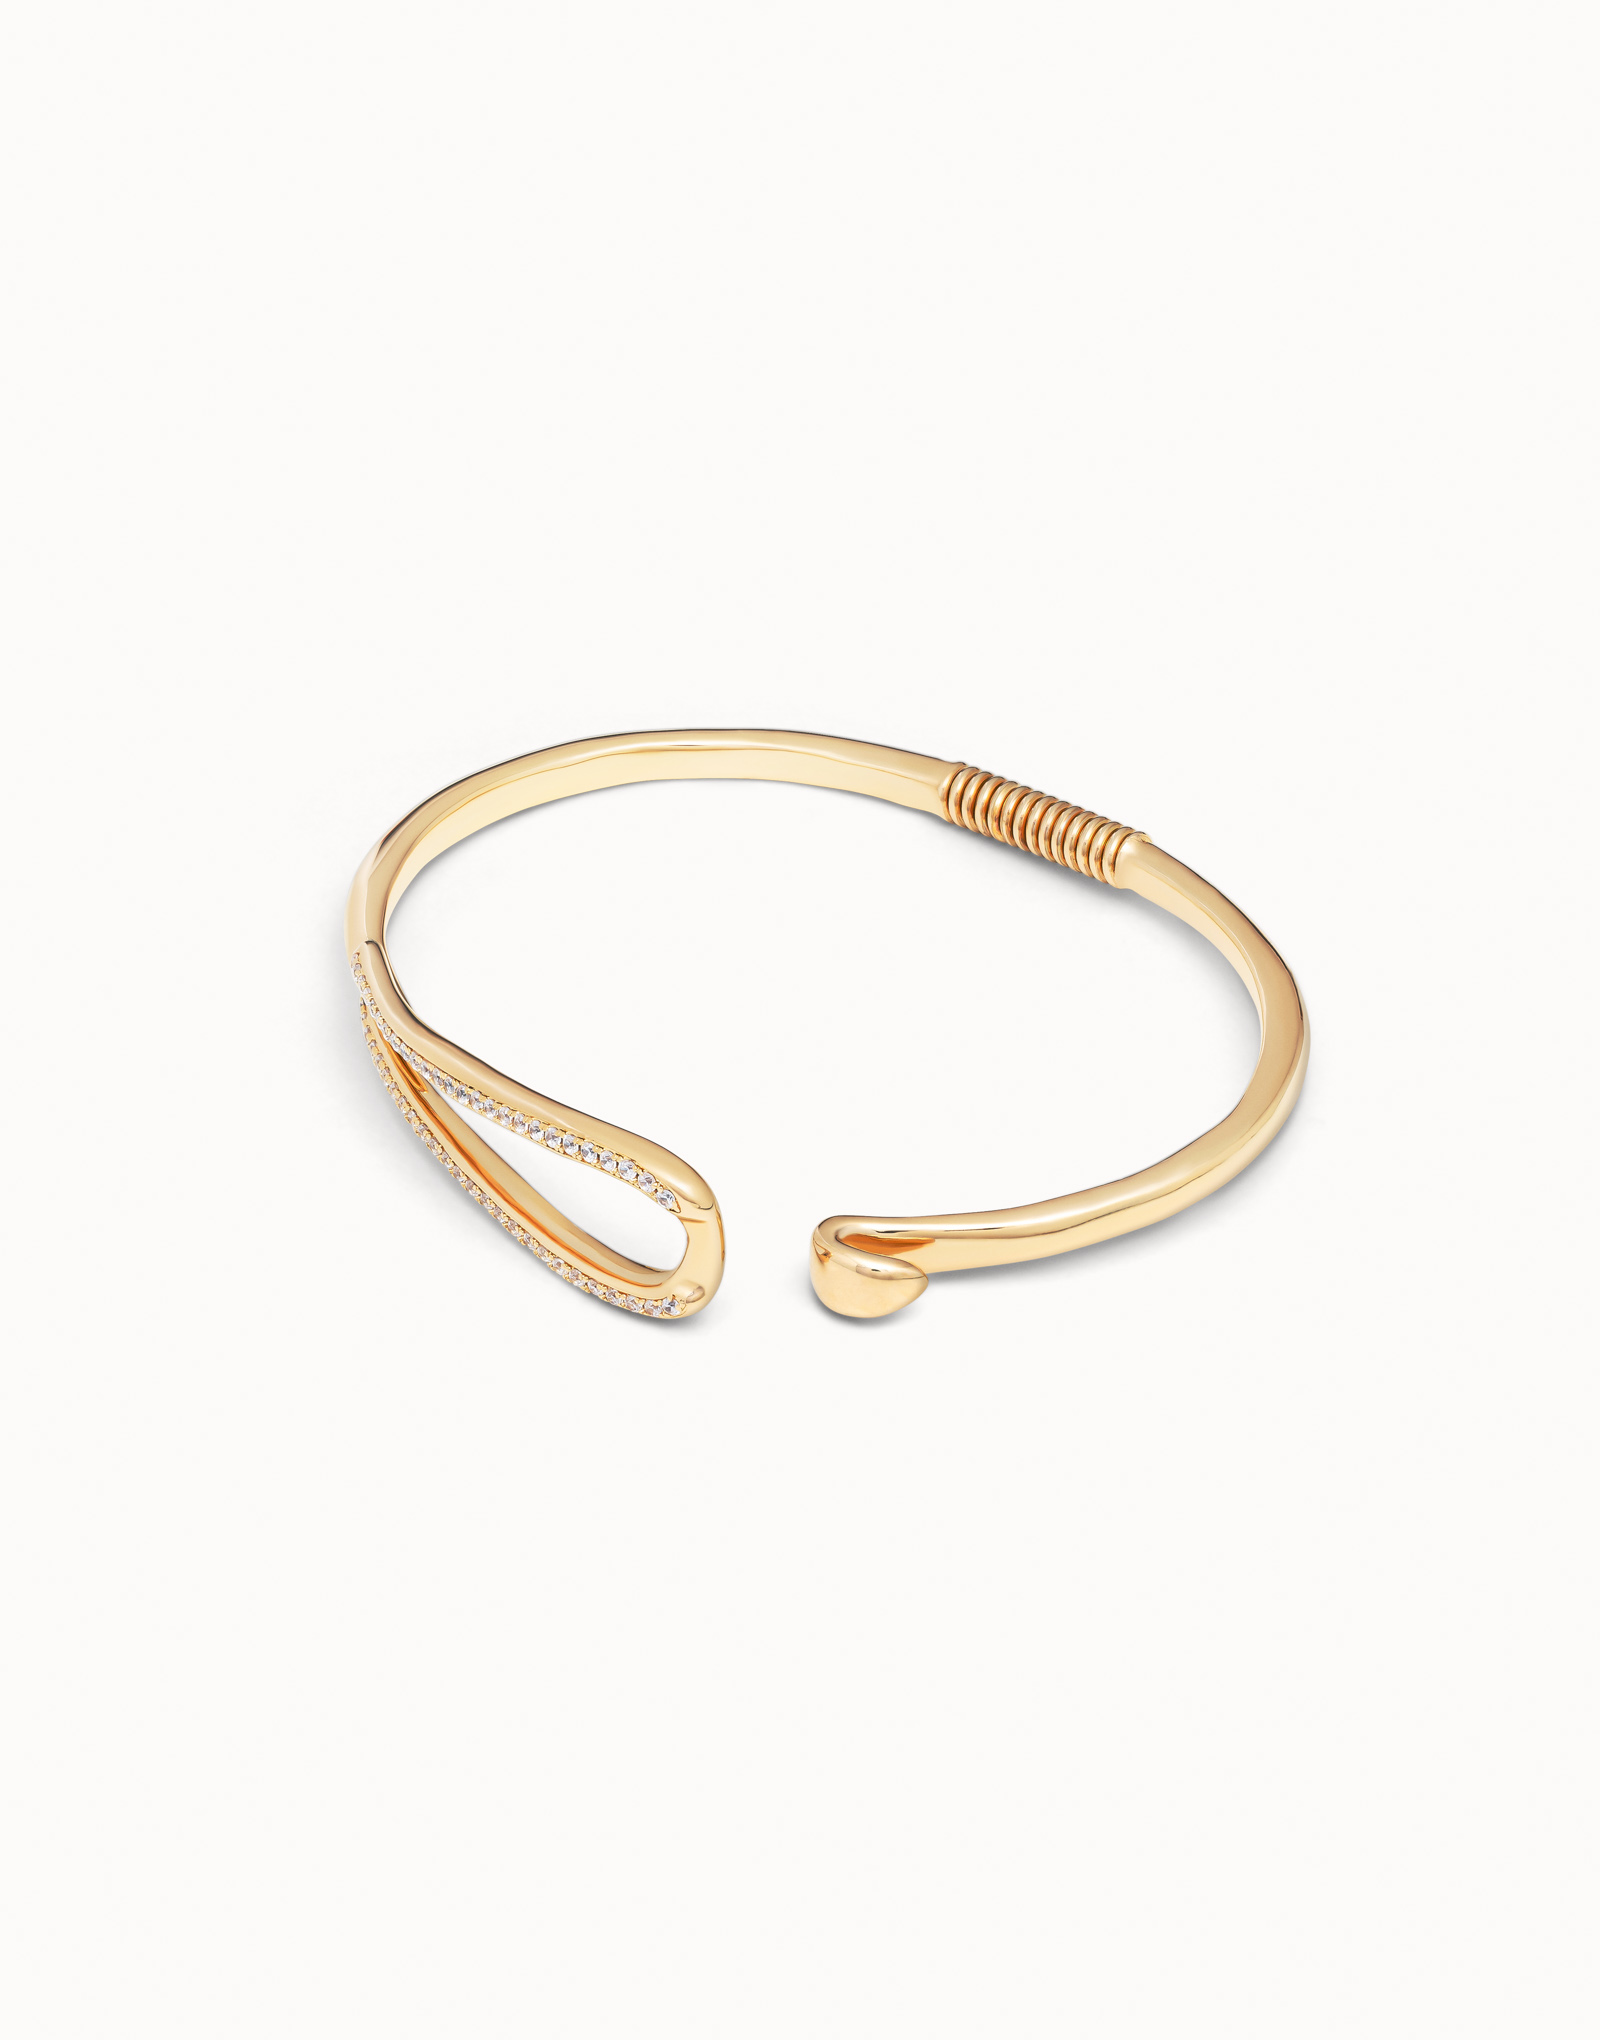 18K gold-plated link shaped bracelet with topaz, Golden, large image number null